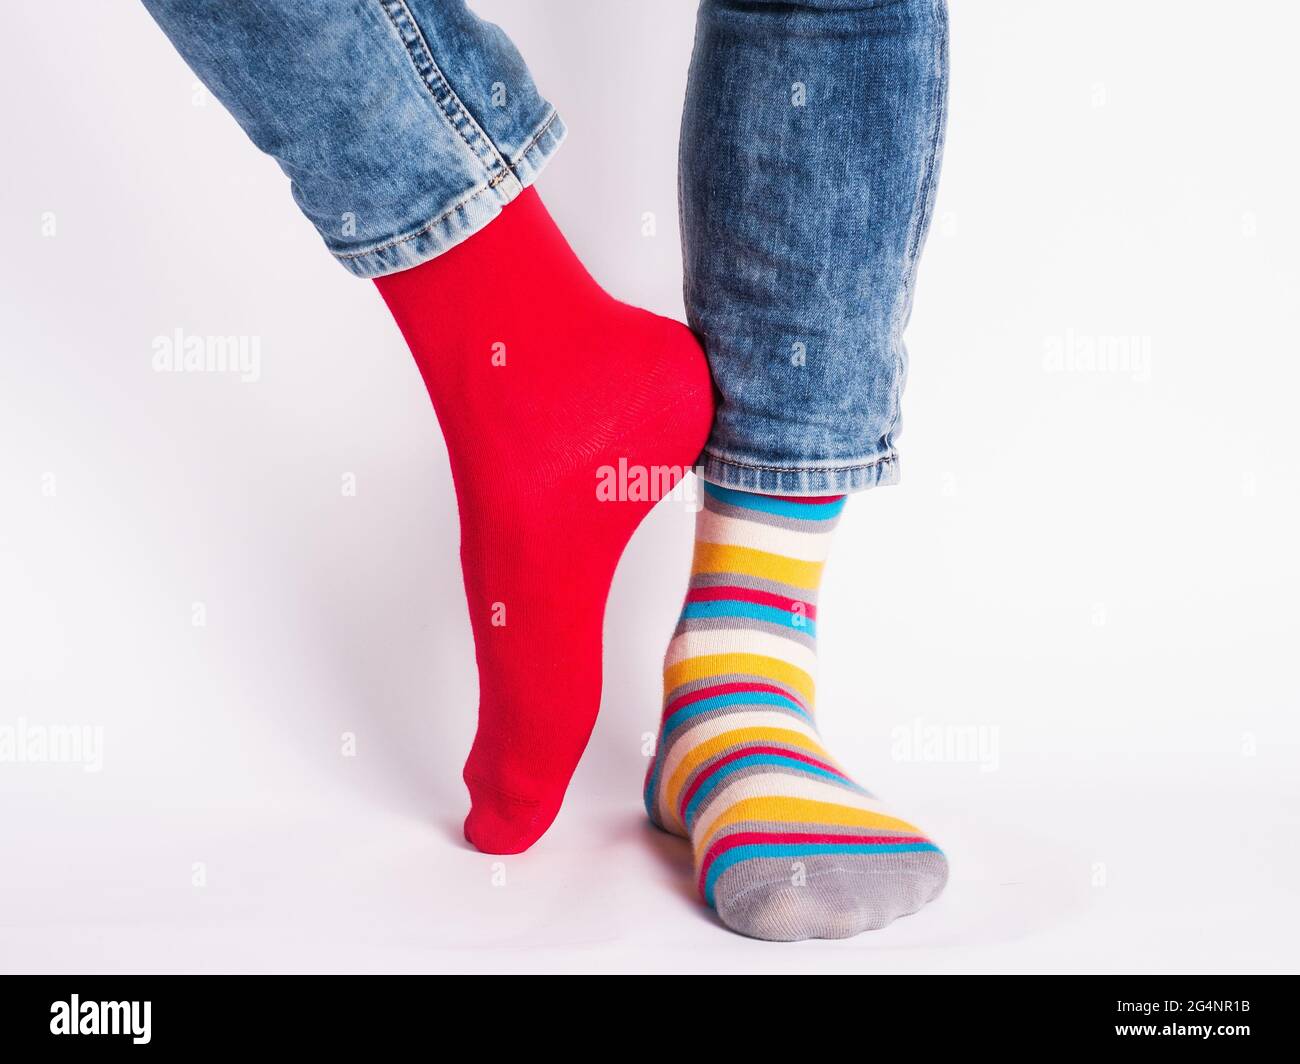 Herrenbeine und helle Socken. Ohne Schuhe. Nahaufnahme. Stil, Schönheit und  Eleganz Konzept Stockfotografie - Alamy